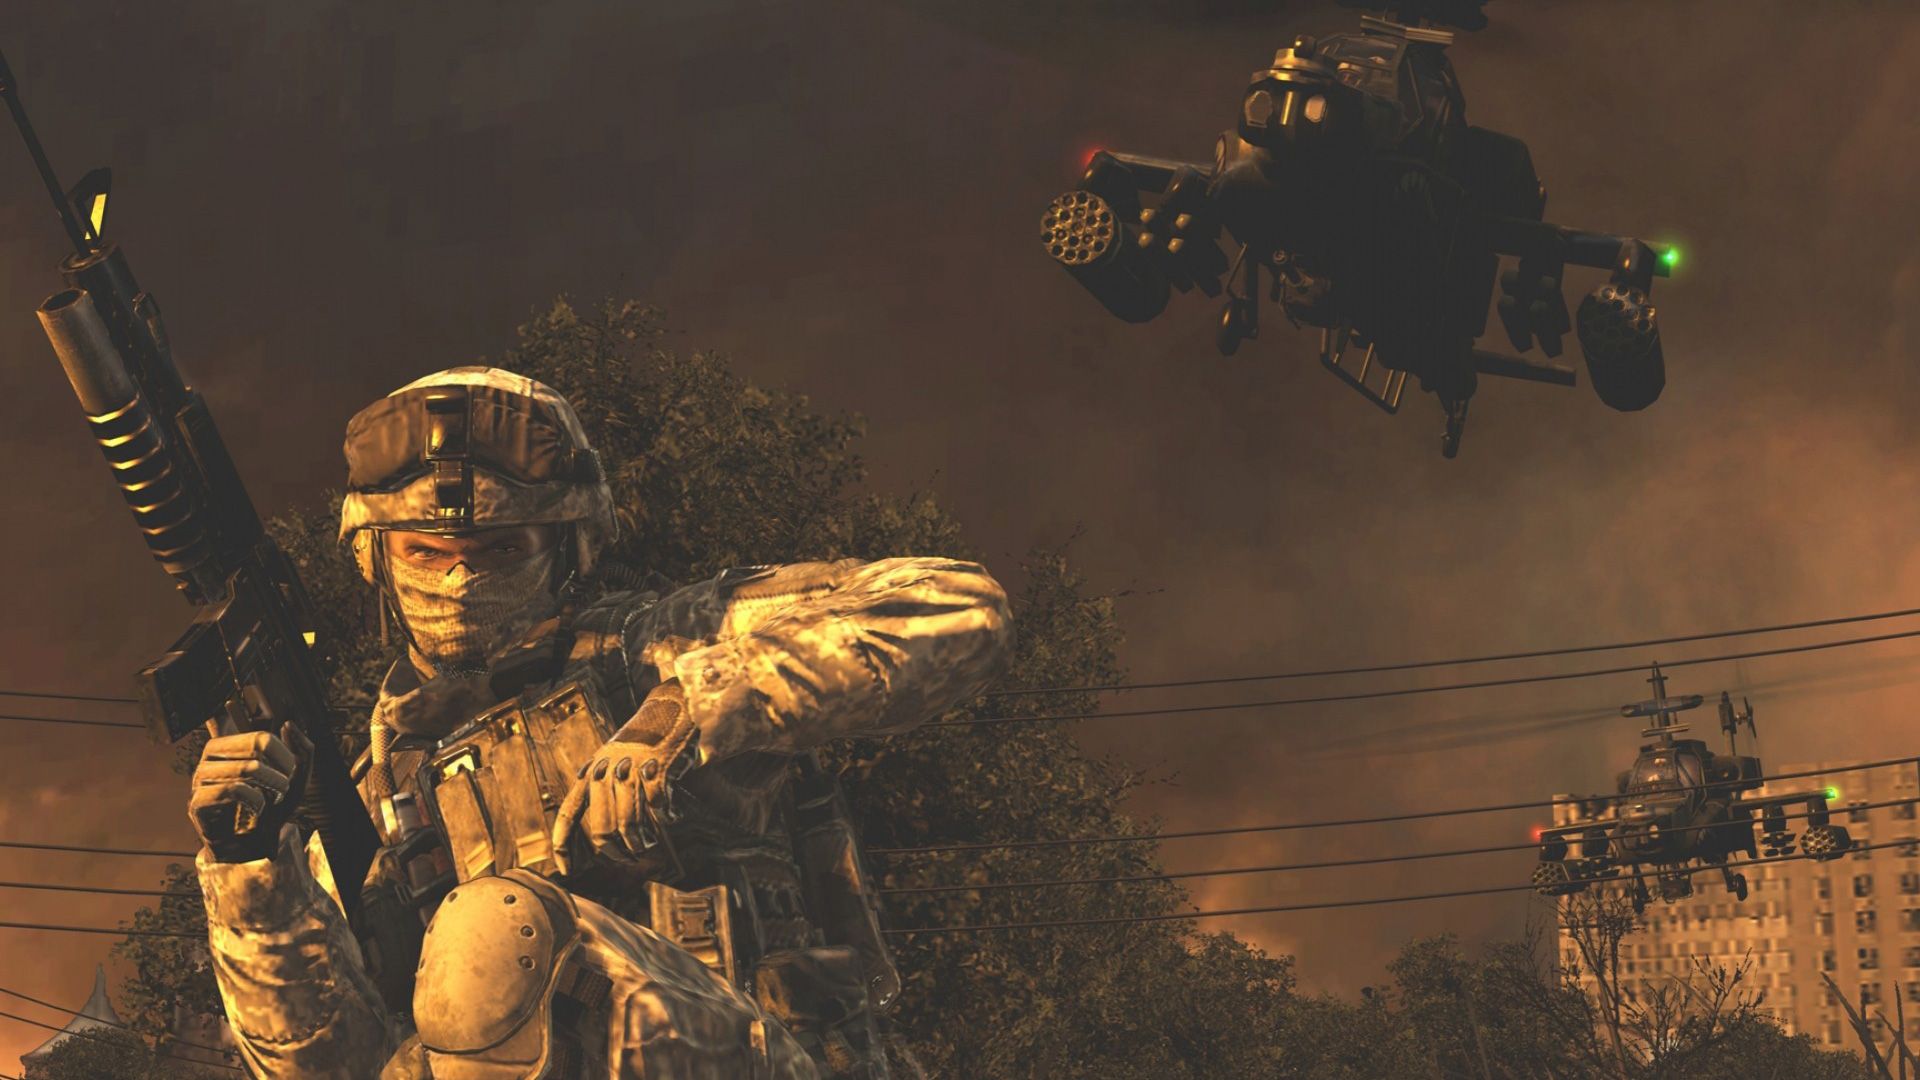 Free Call of Duty: Modern Warfare 2 Wallpaper in 1920x1080